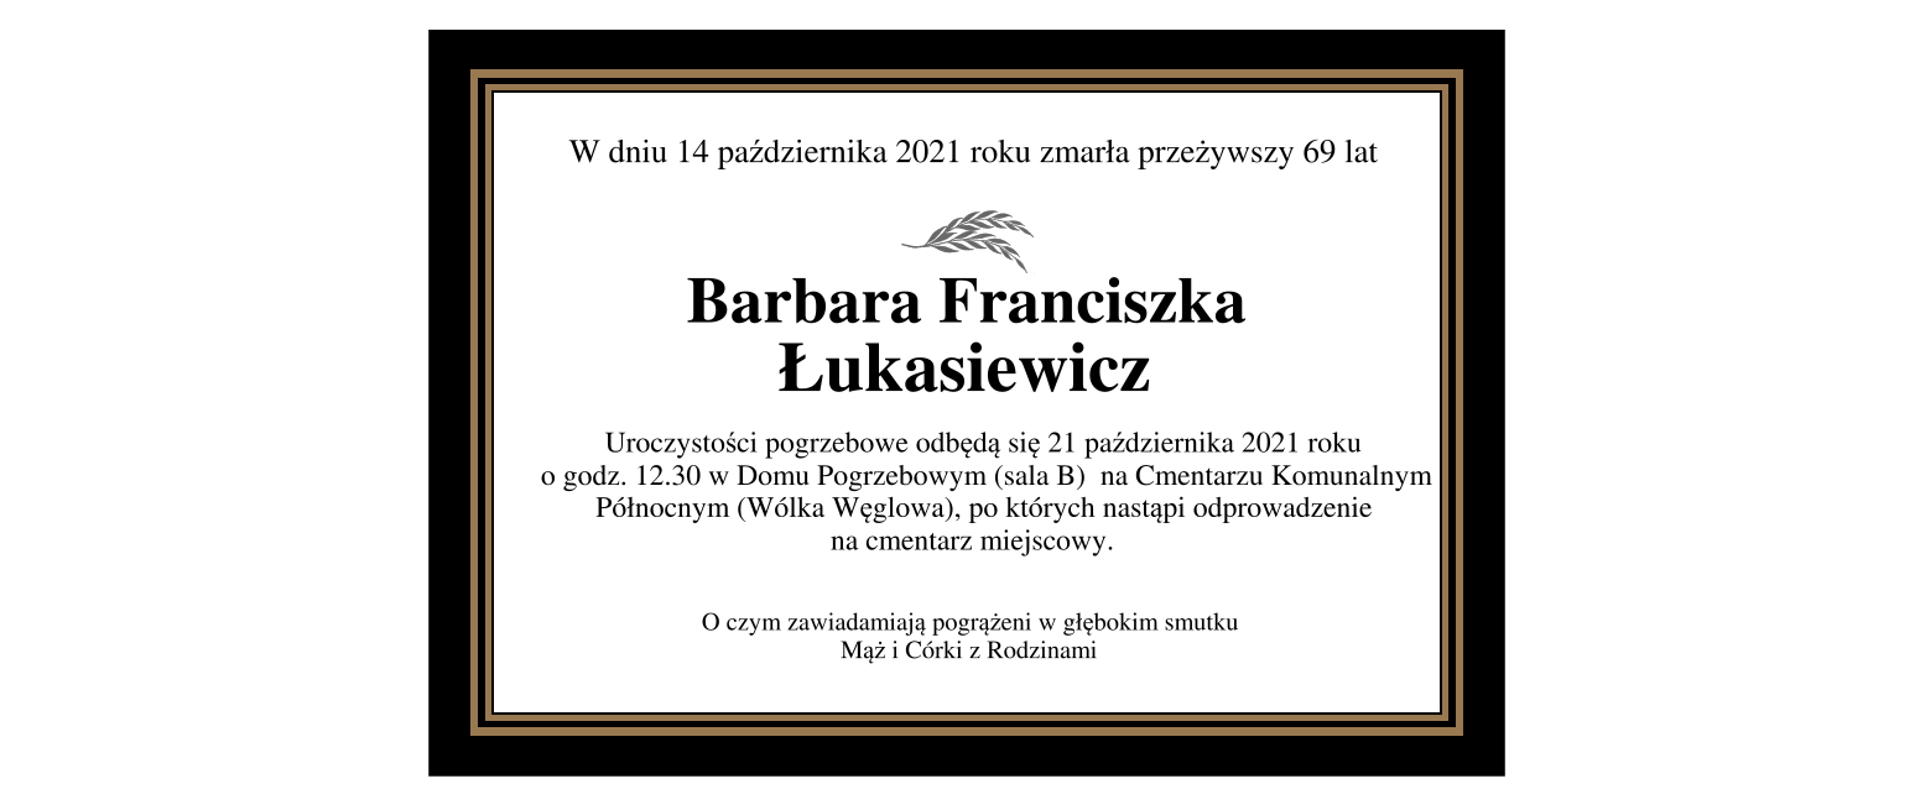 W dniu 14 października 2021 r., przeżywszy 69 lat zmarła Barbara Łukasiewicz. Uroczystości pogrzebowe odbędą się 21 października 2021 roku o godzinie 12:30 w Domu Pogrzebowym (sala B) na Cmentarzu Komunalnym Północnym (Wólka Węglowa), po których nastąpi odprowadzenie na cmentarz miejscowy. O czym zawiadamiają pogrążeni w głębokim smutku Mąż i Córki z Rodzinami.